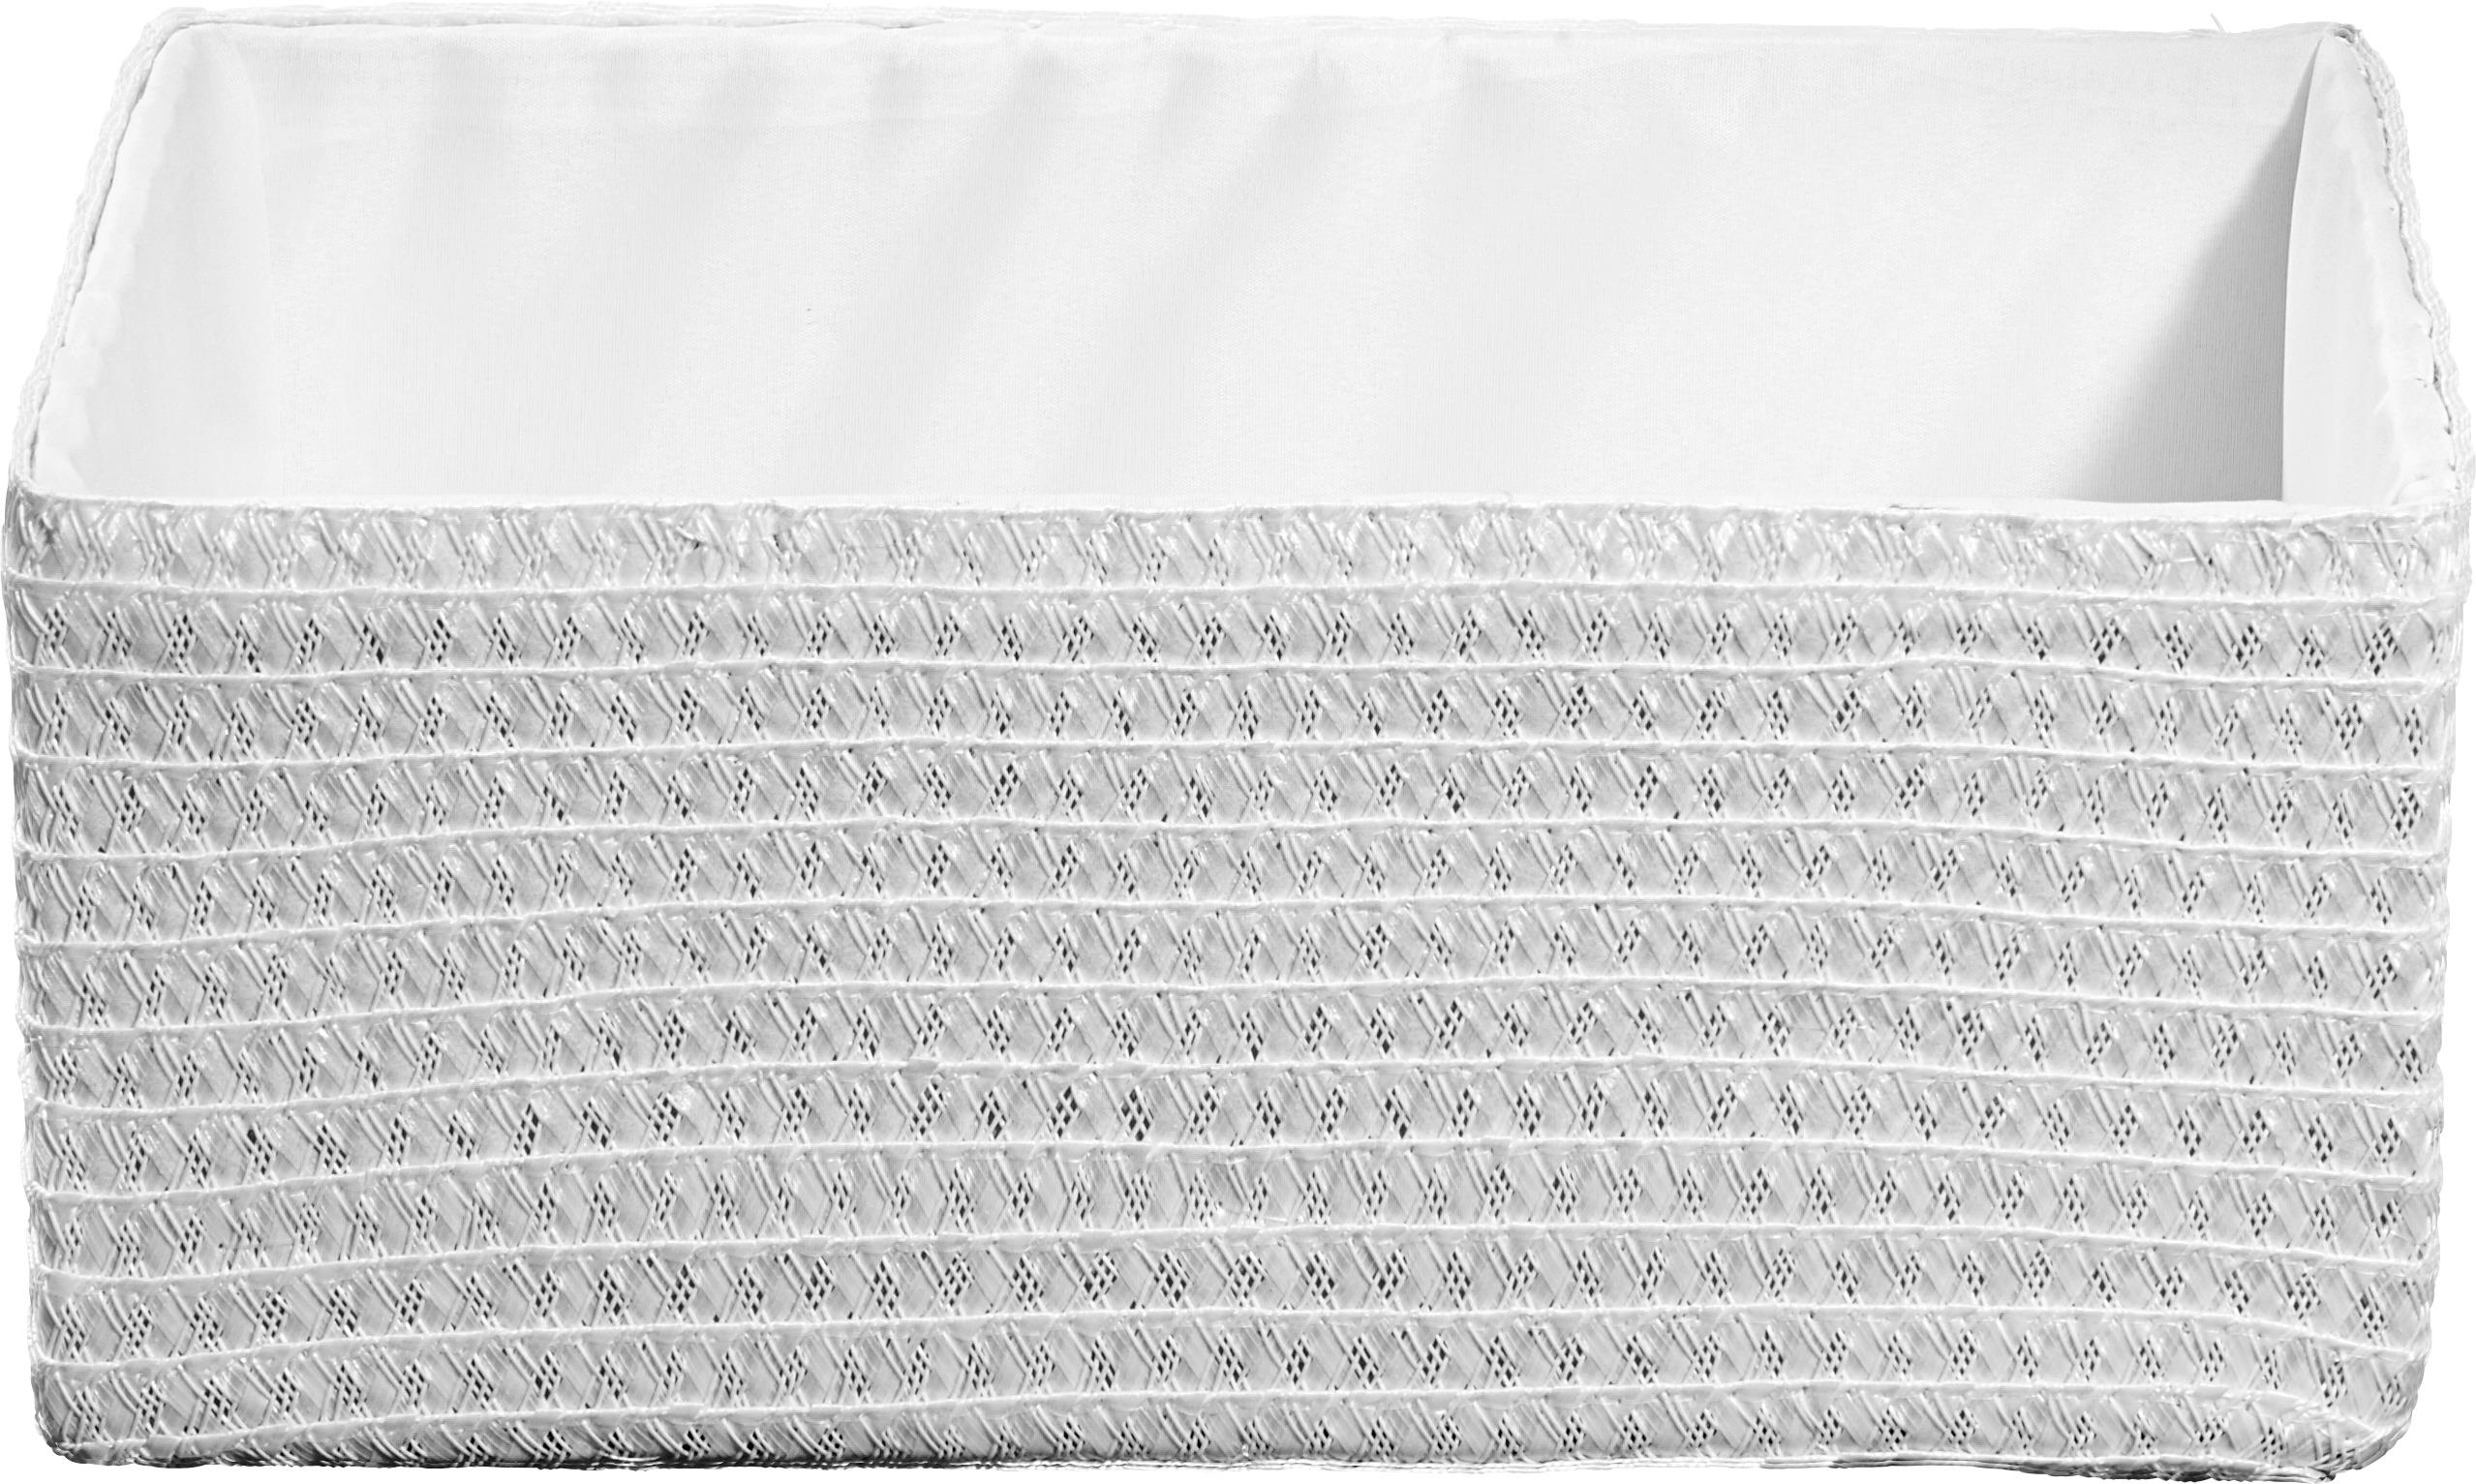 POLCKOSÁR 32/23/14 cm  - Fehér, Basics, Műanyag/Textil (32/23/14cm) - Landscape